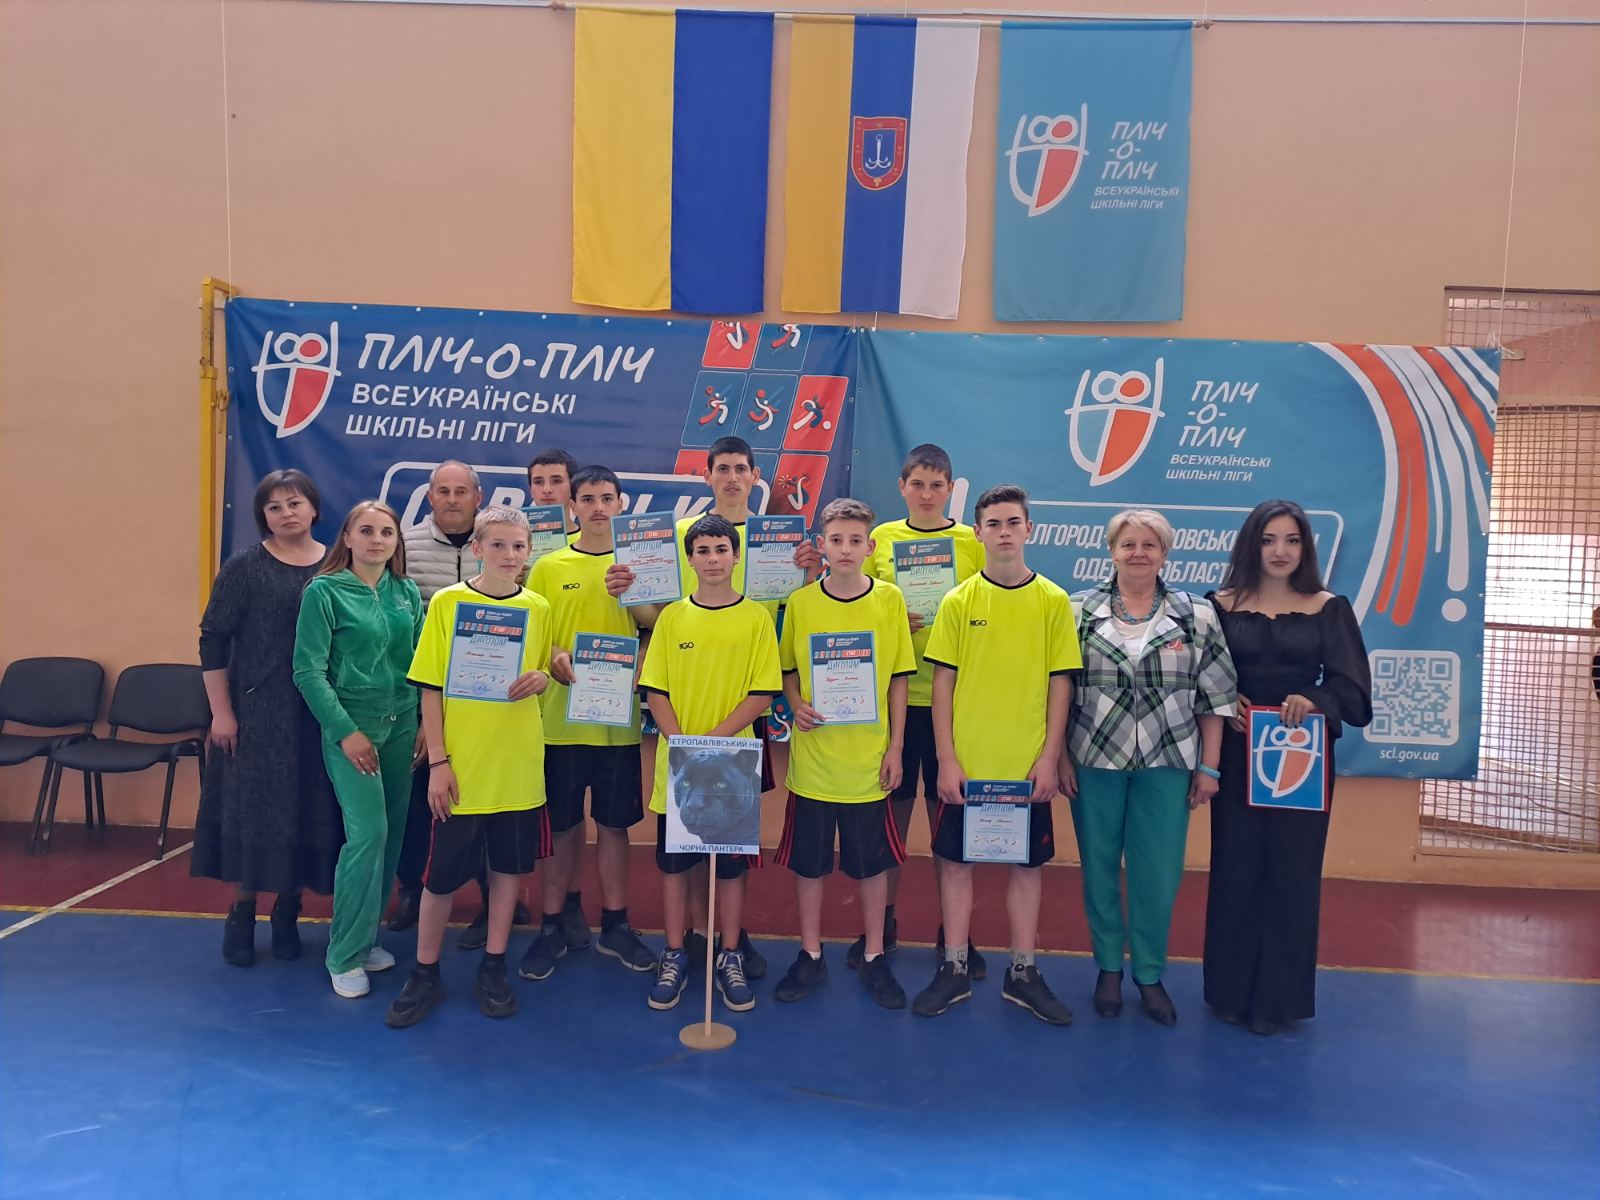 На днях в Саратской общине состоялся ІІІ зональный районный этап спортивных соревнований «Бок о бок. Всеукраинские школьные лиги» по баскетболу среди ребят